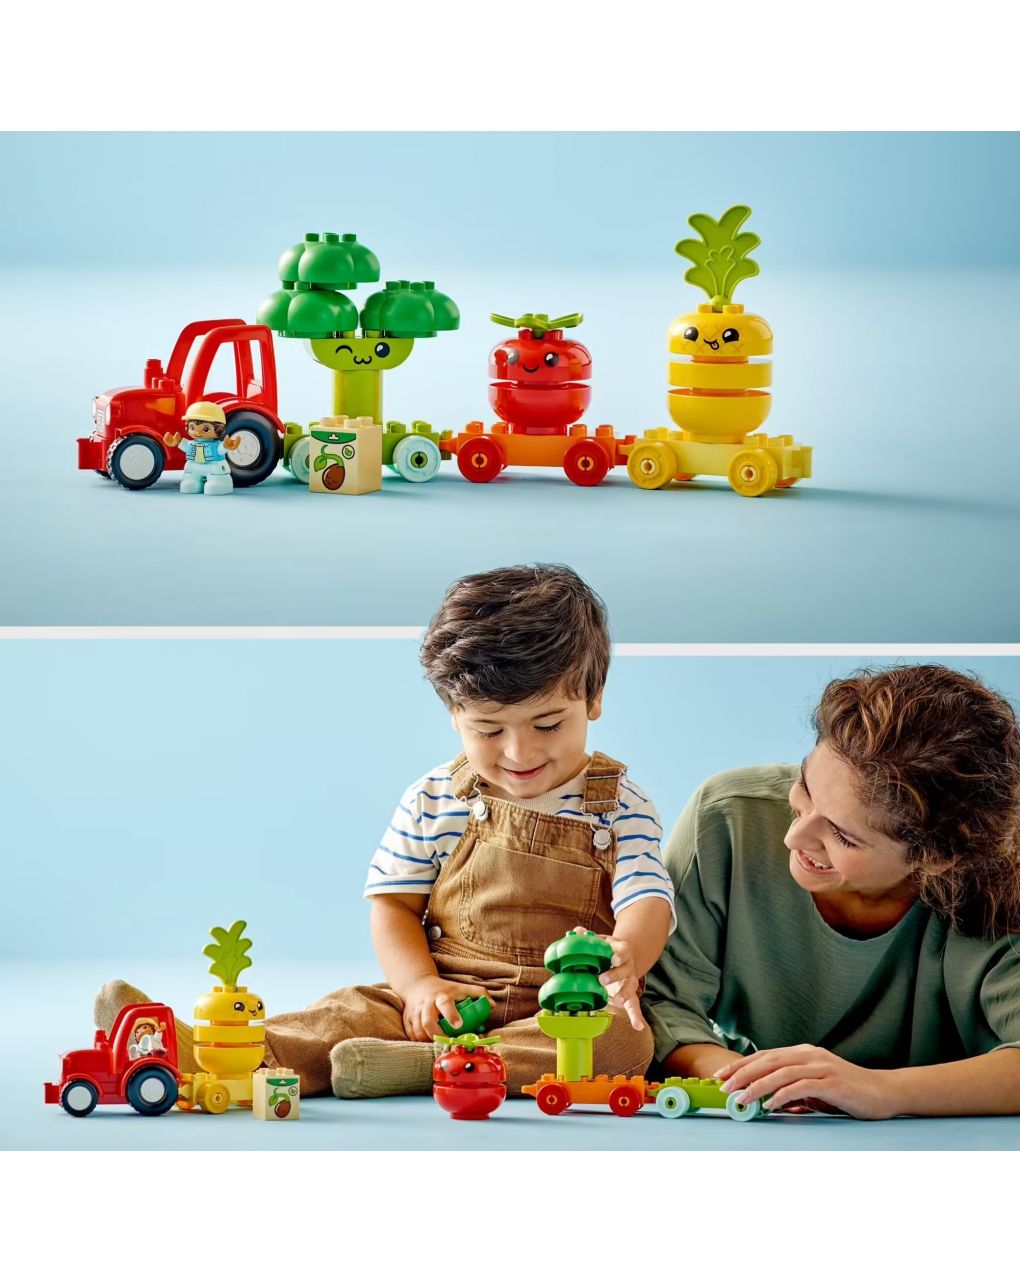 Il trattore di frutta e verdura - lego duplo - LEGO Duplo